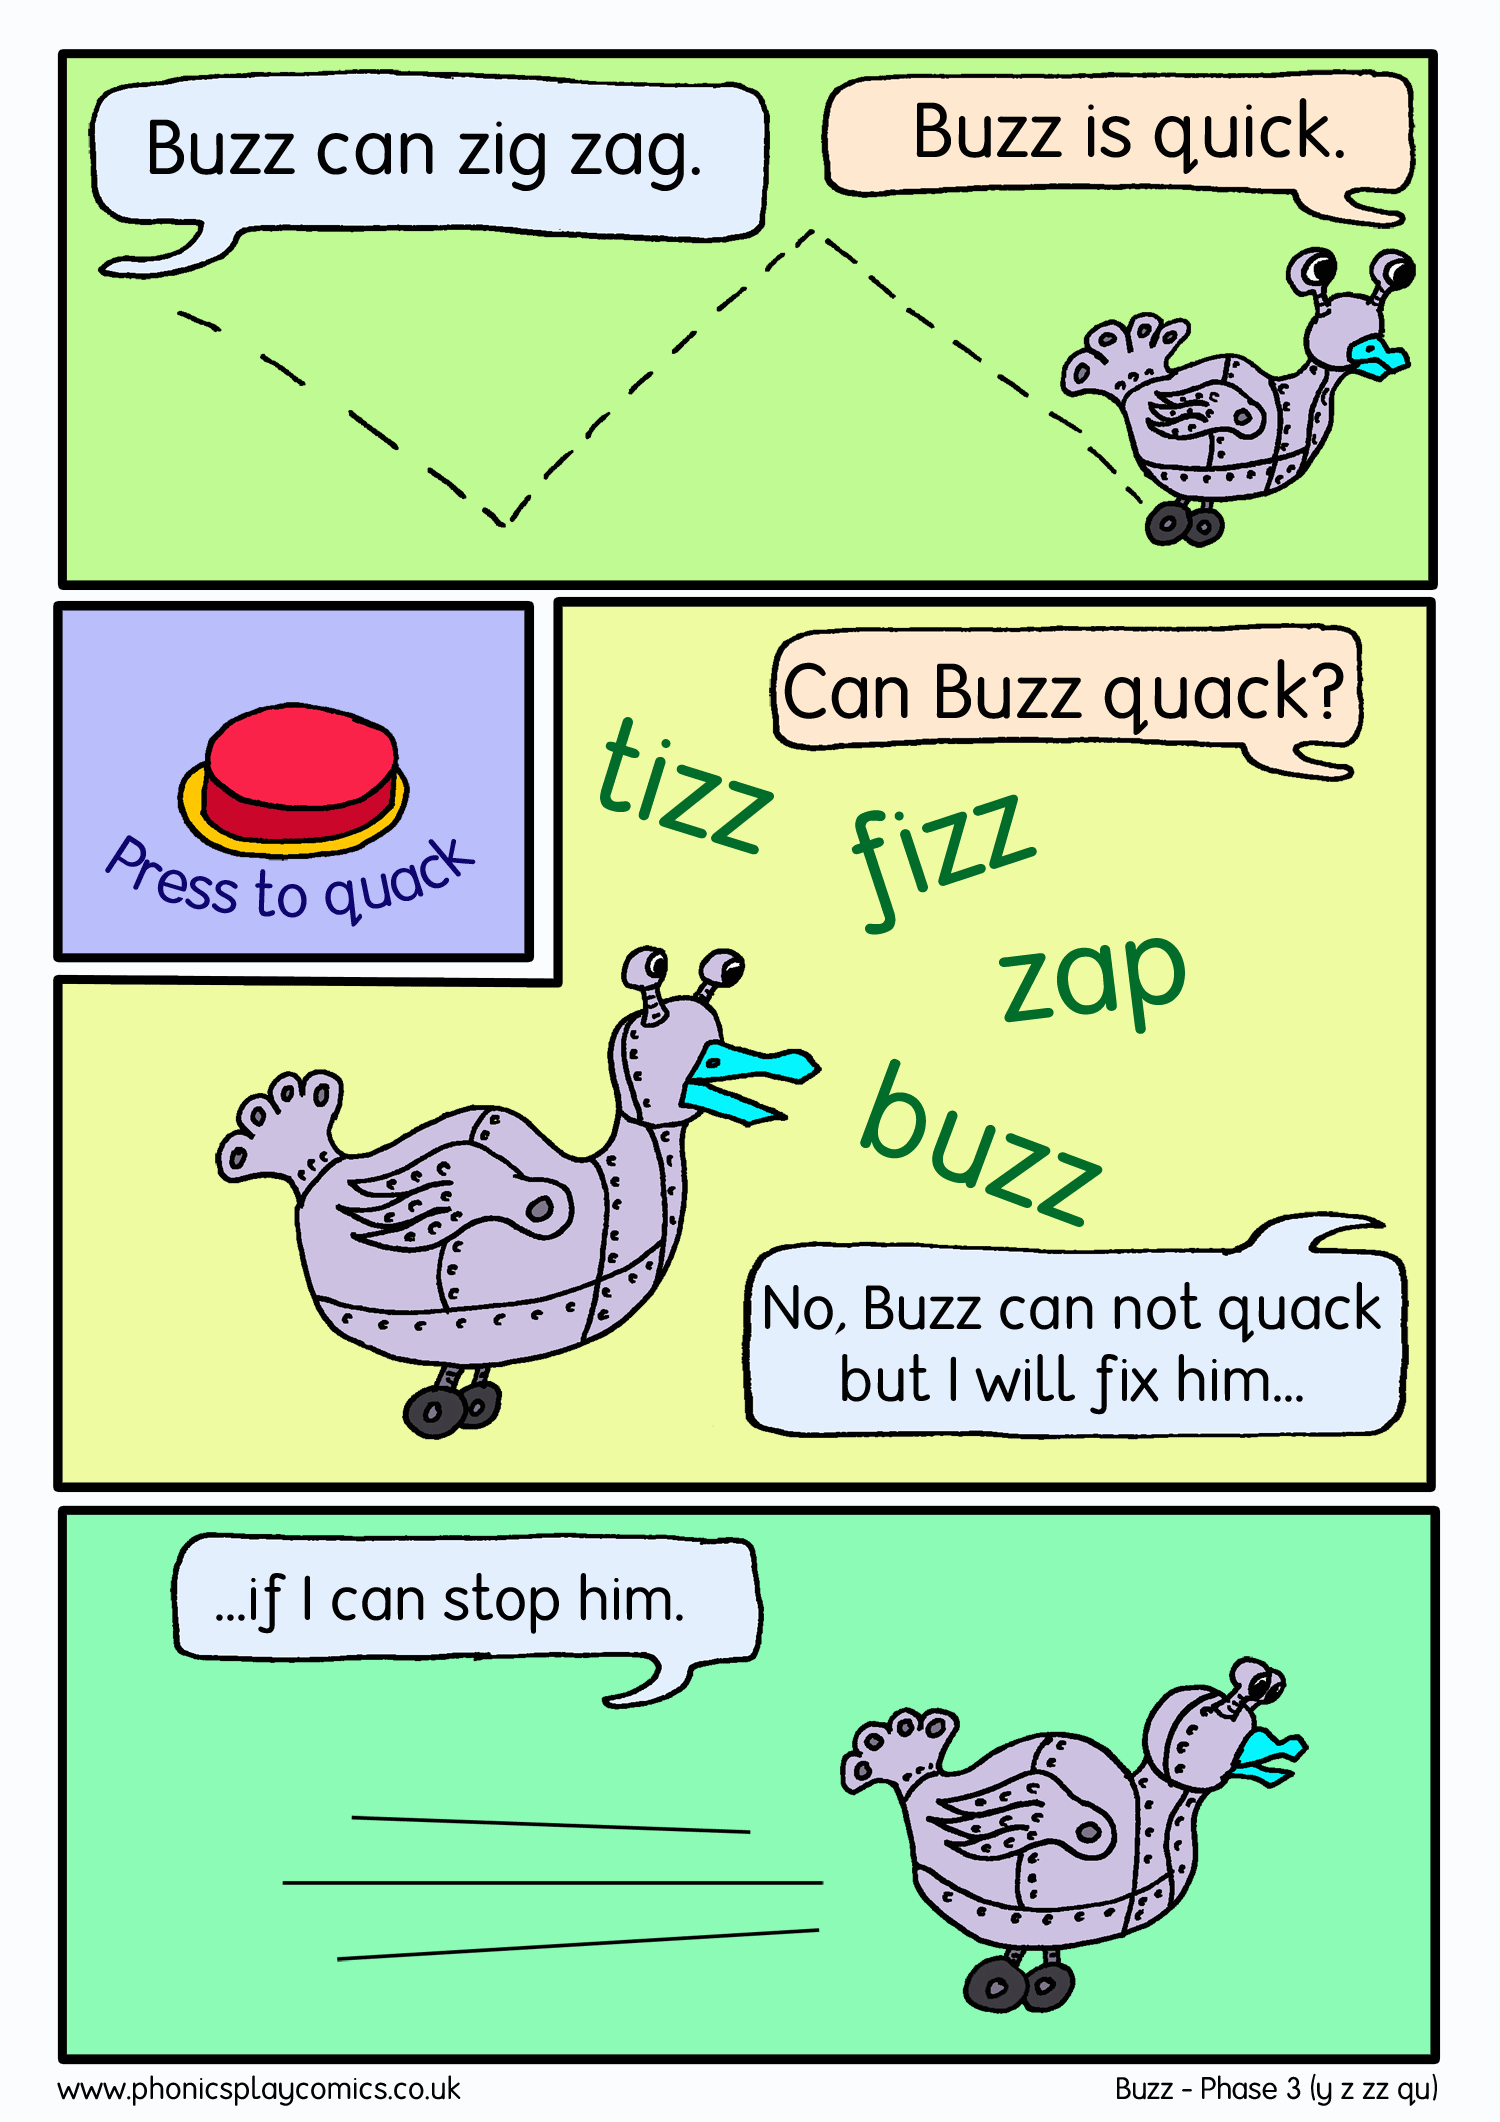 Buzz comic panel2